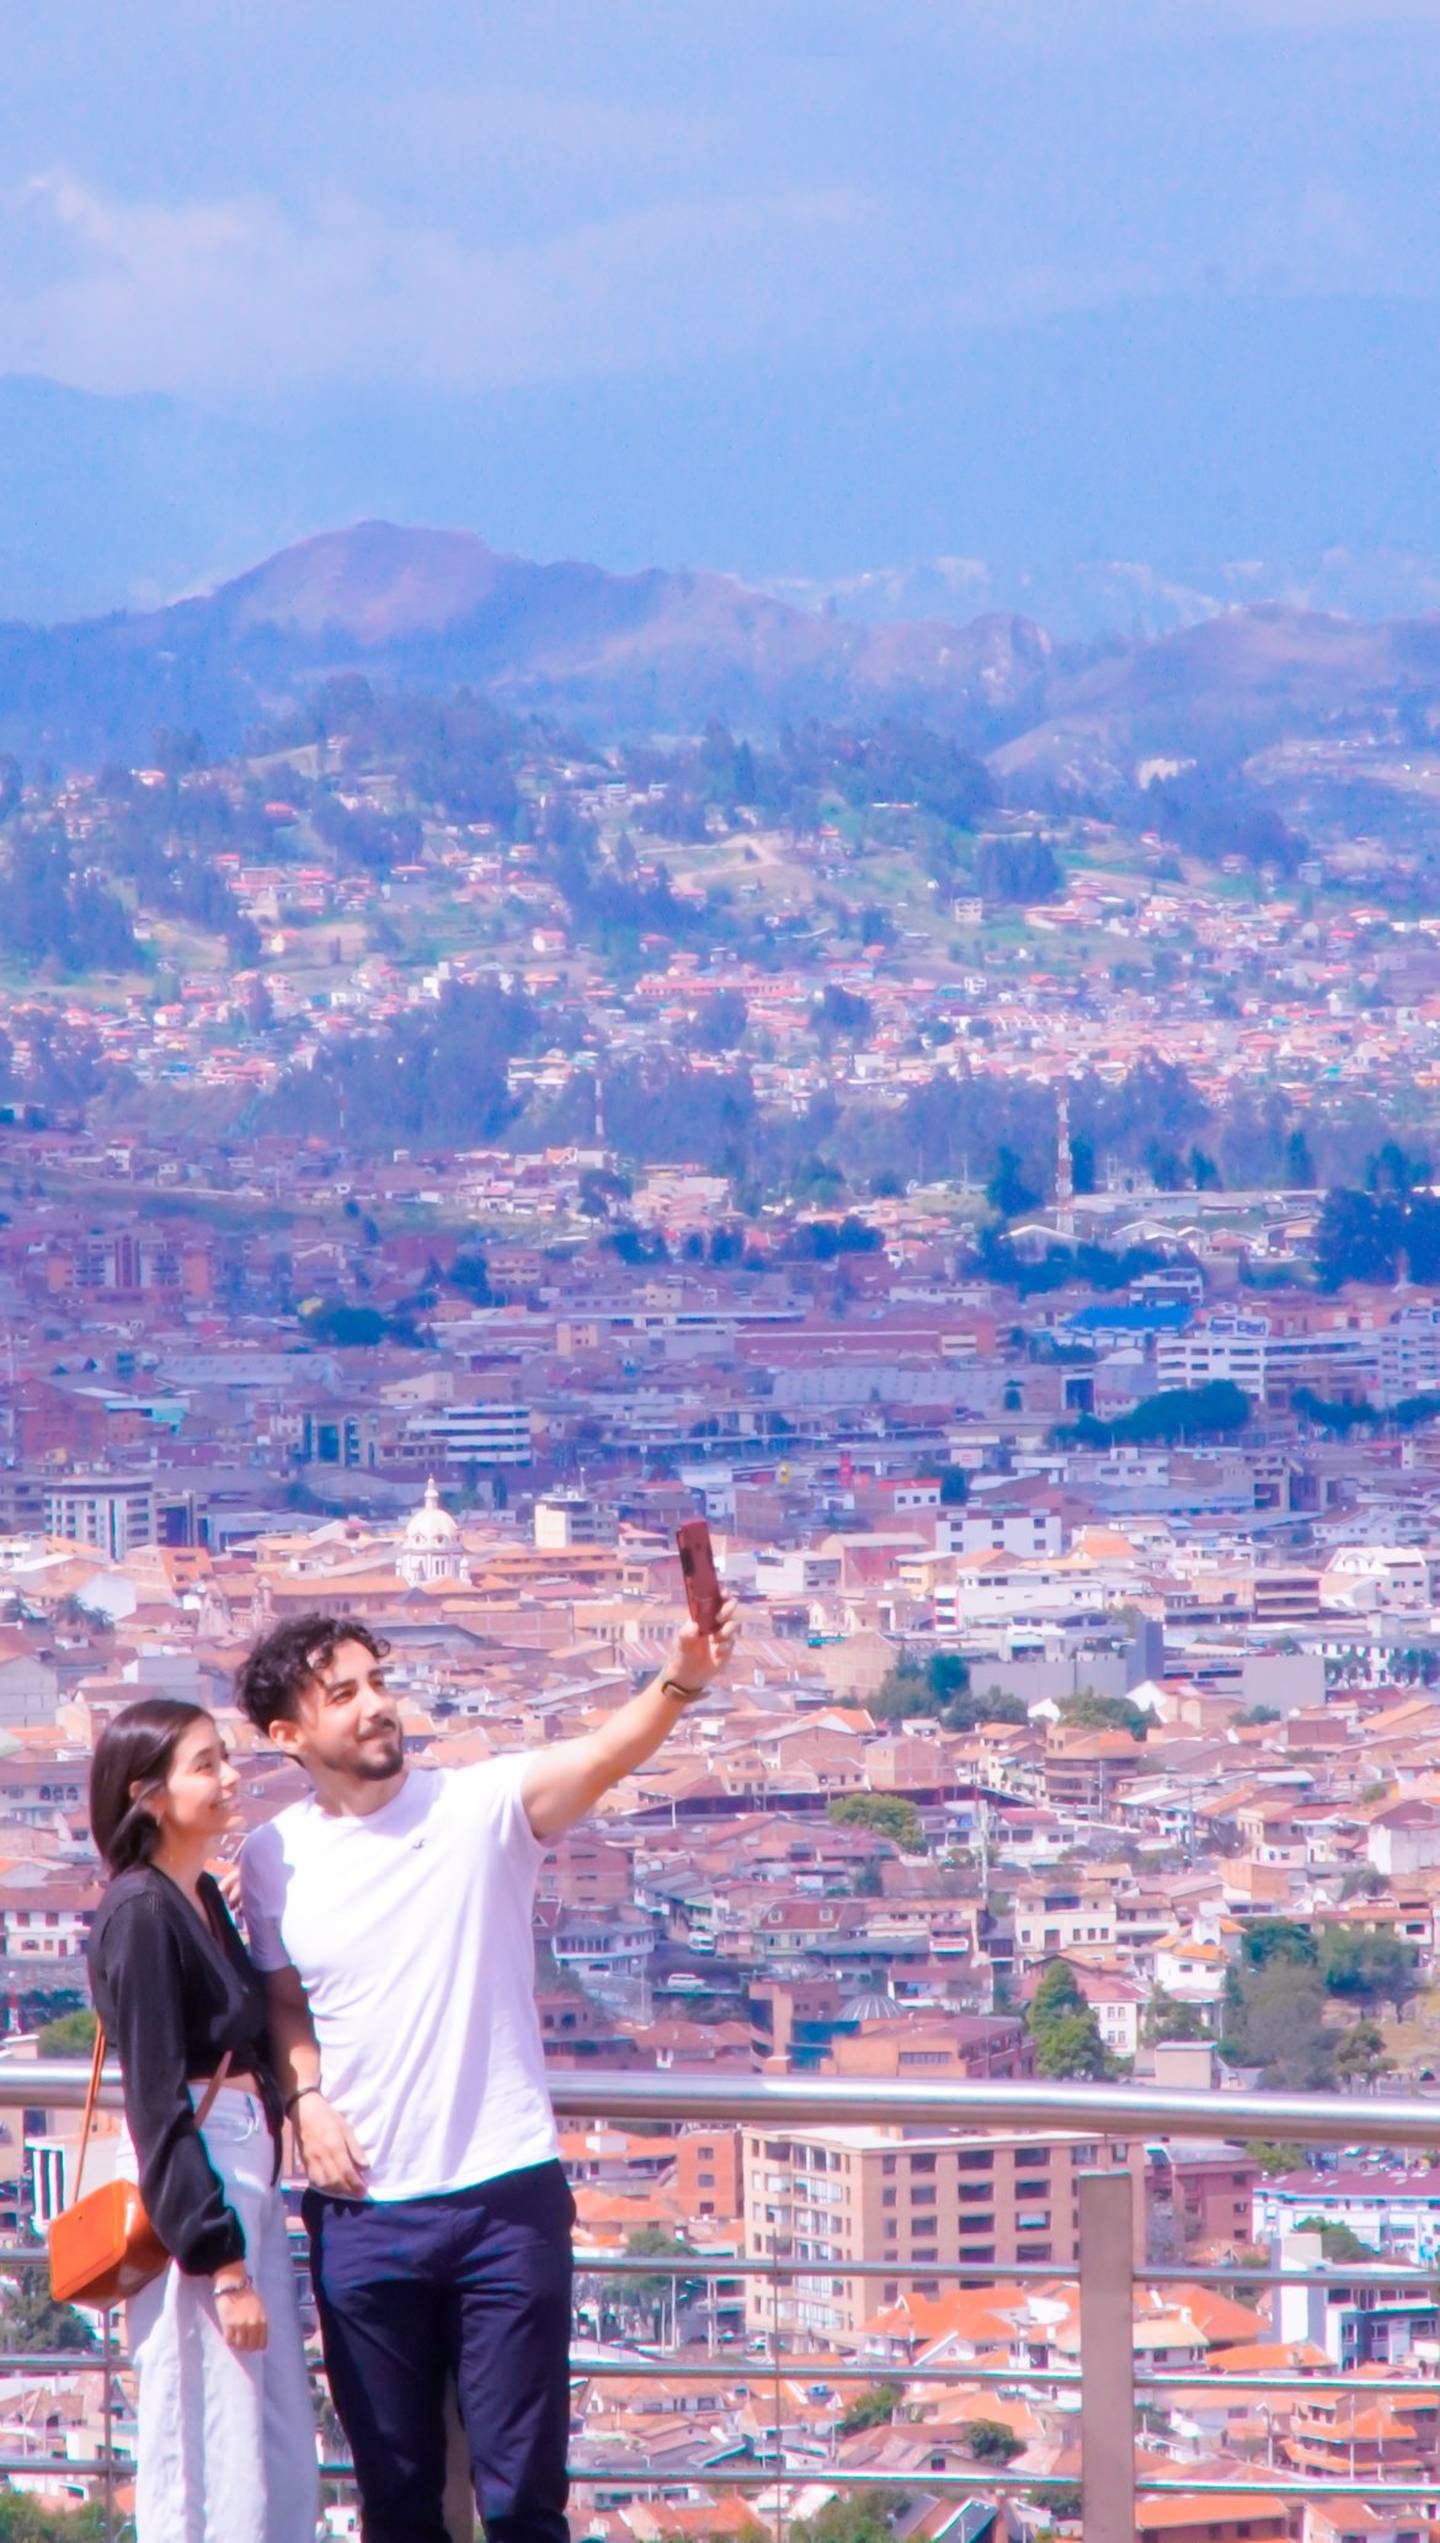 Cuenca, Turi y su renovado mirador turístico